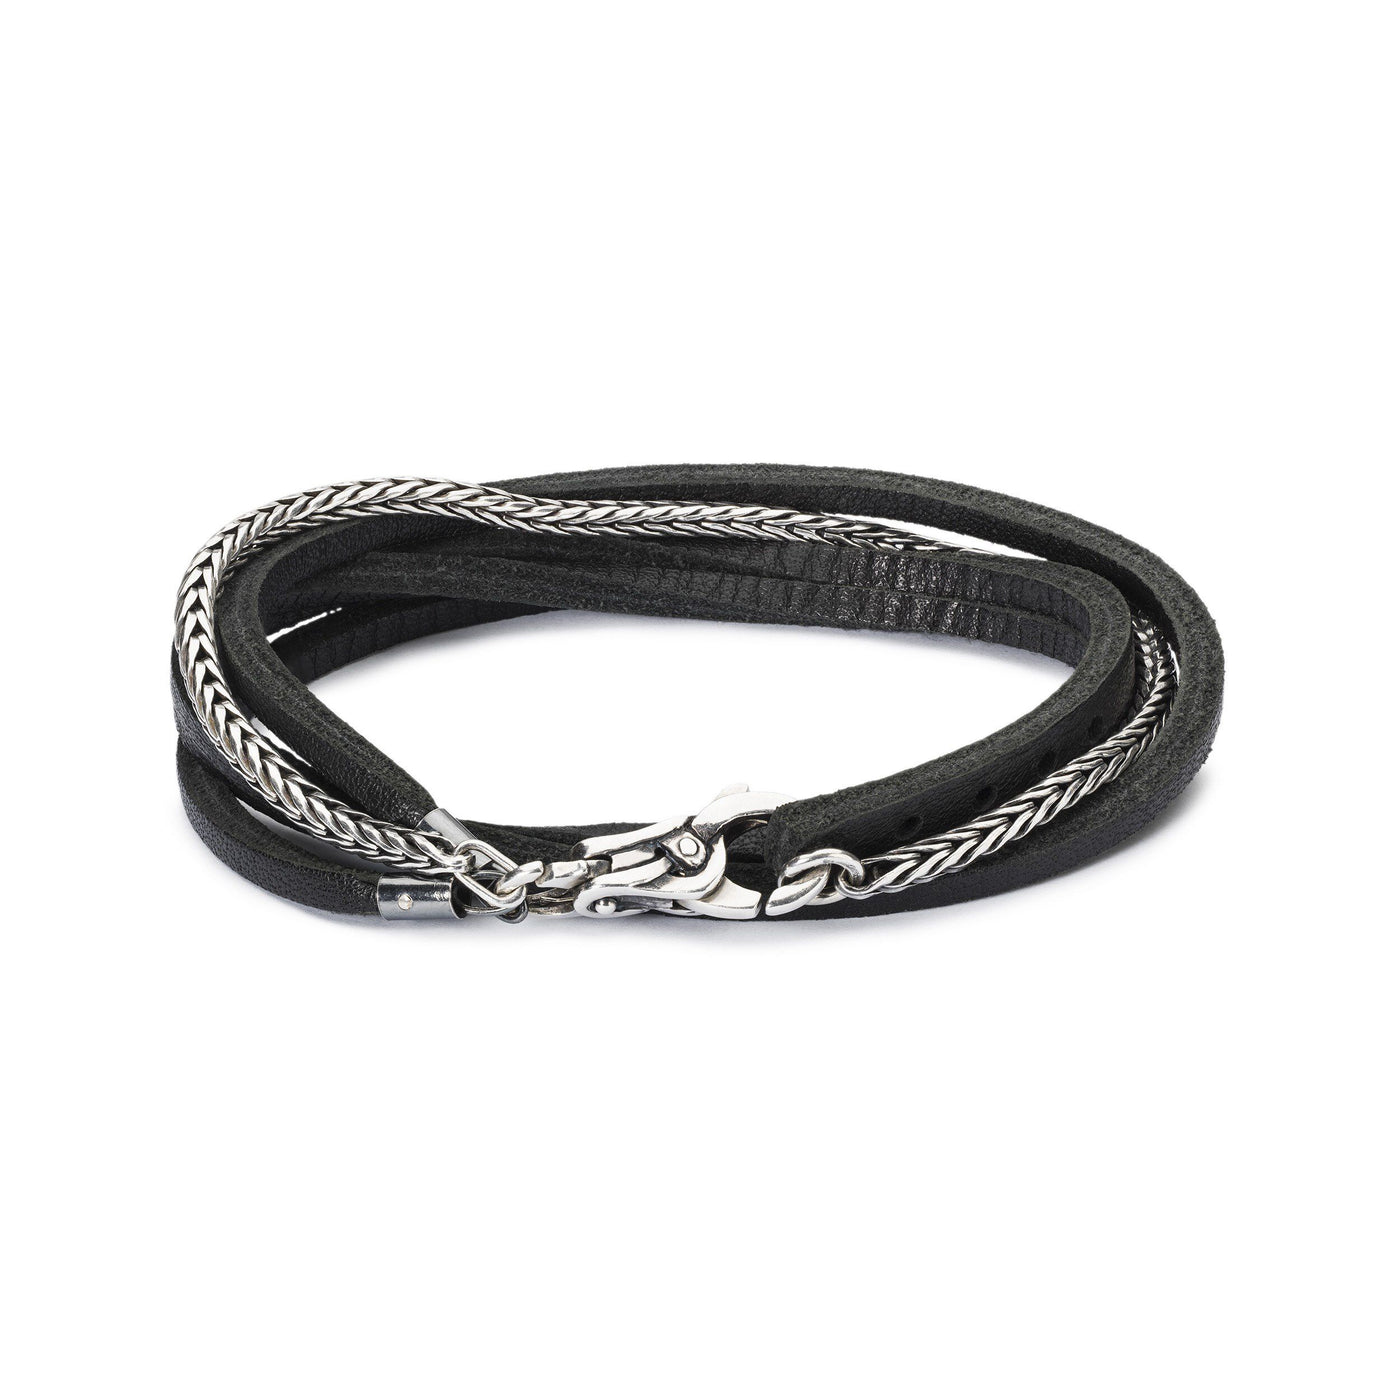 Silver & Leather Bracelet - Trollbeads Canada